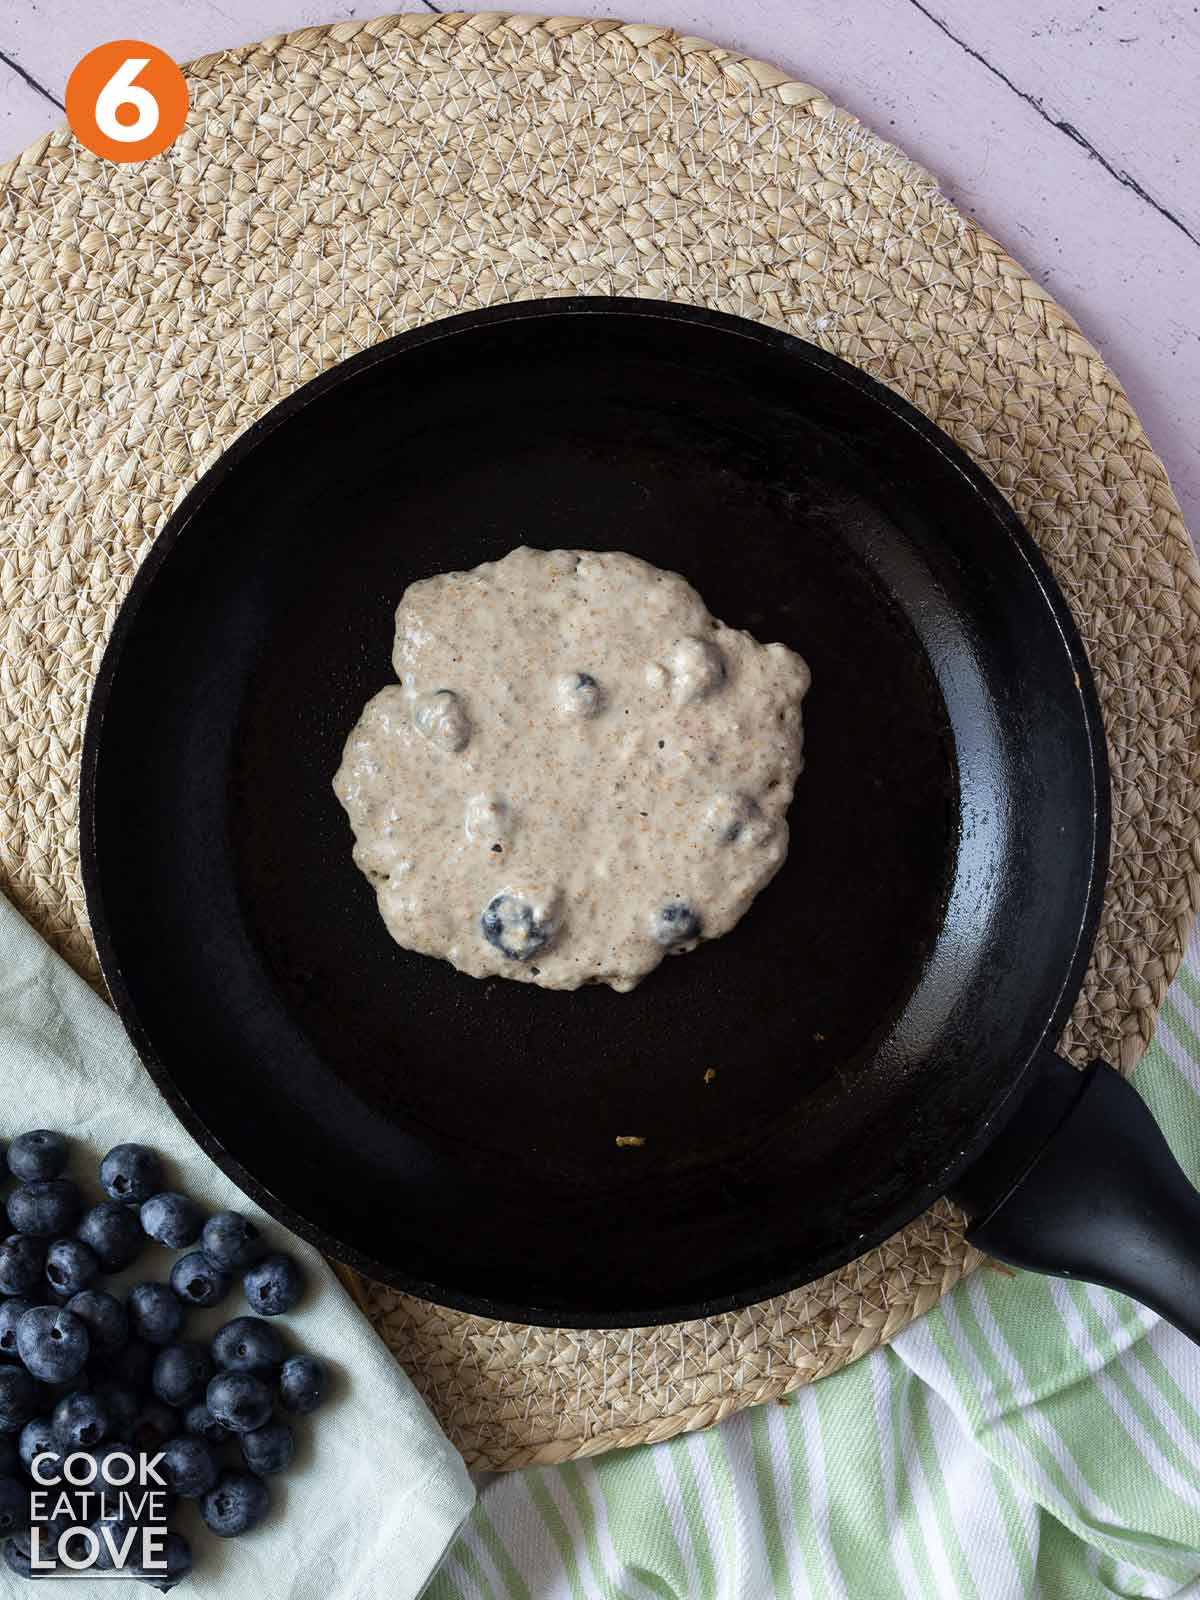 Vegan blueberry chia pancake cooking in a pan.